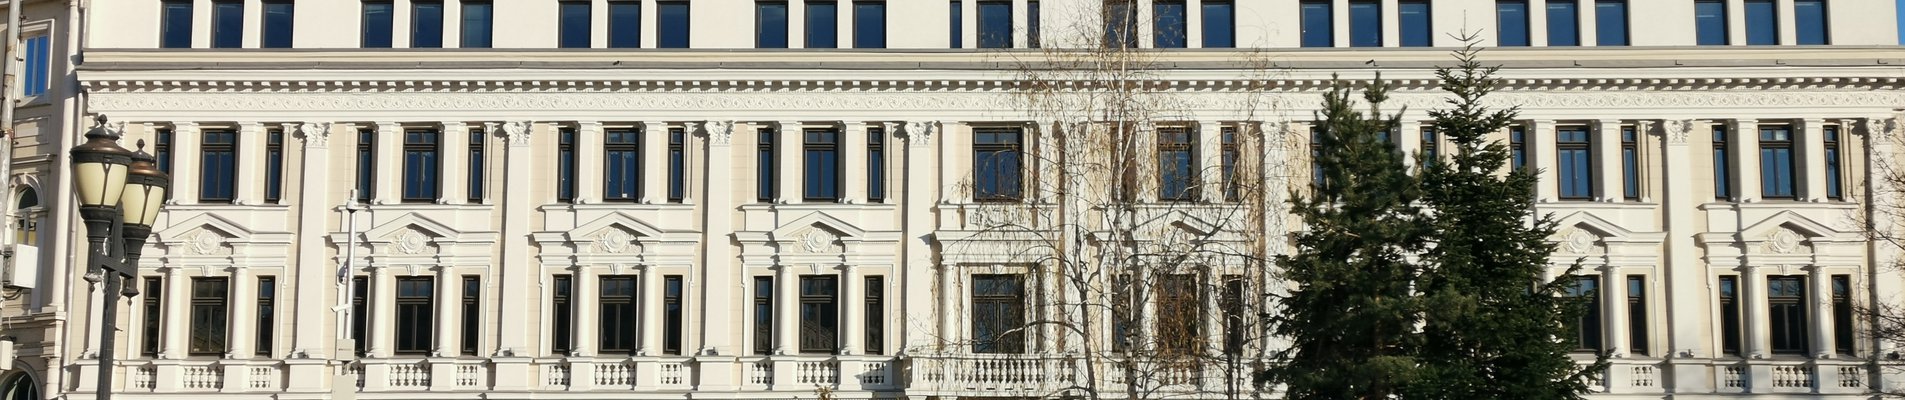 Ръководството на ББР оказва пълно съдействие на българската прокуратура